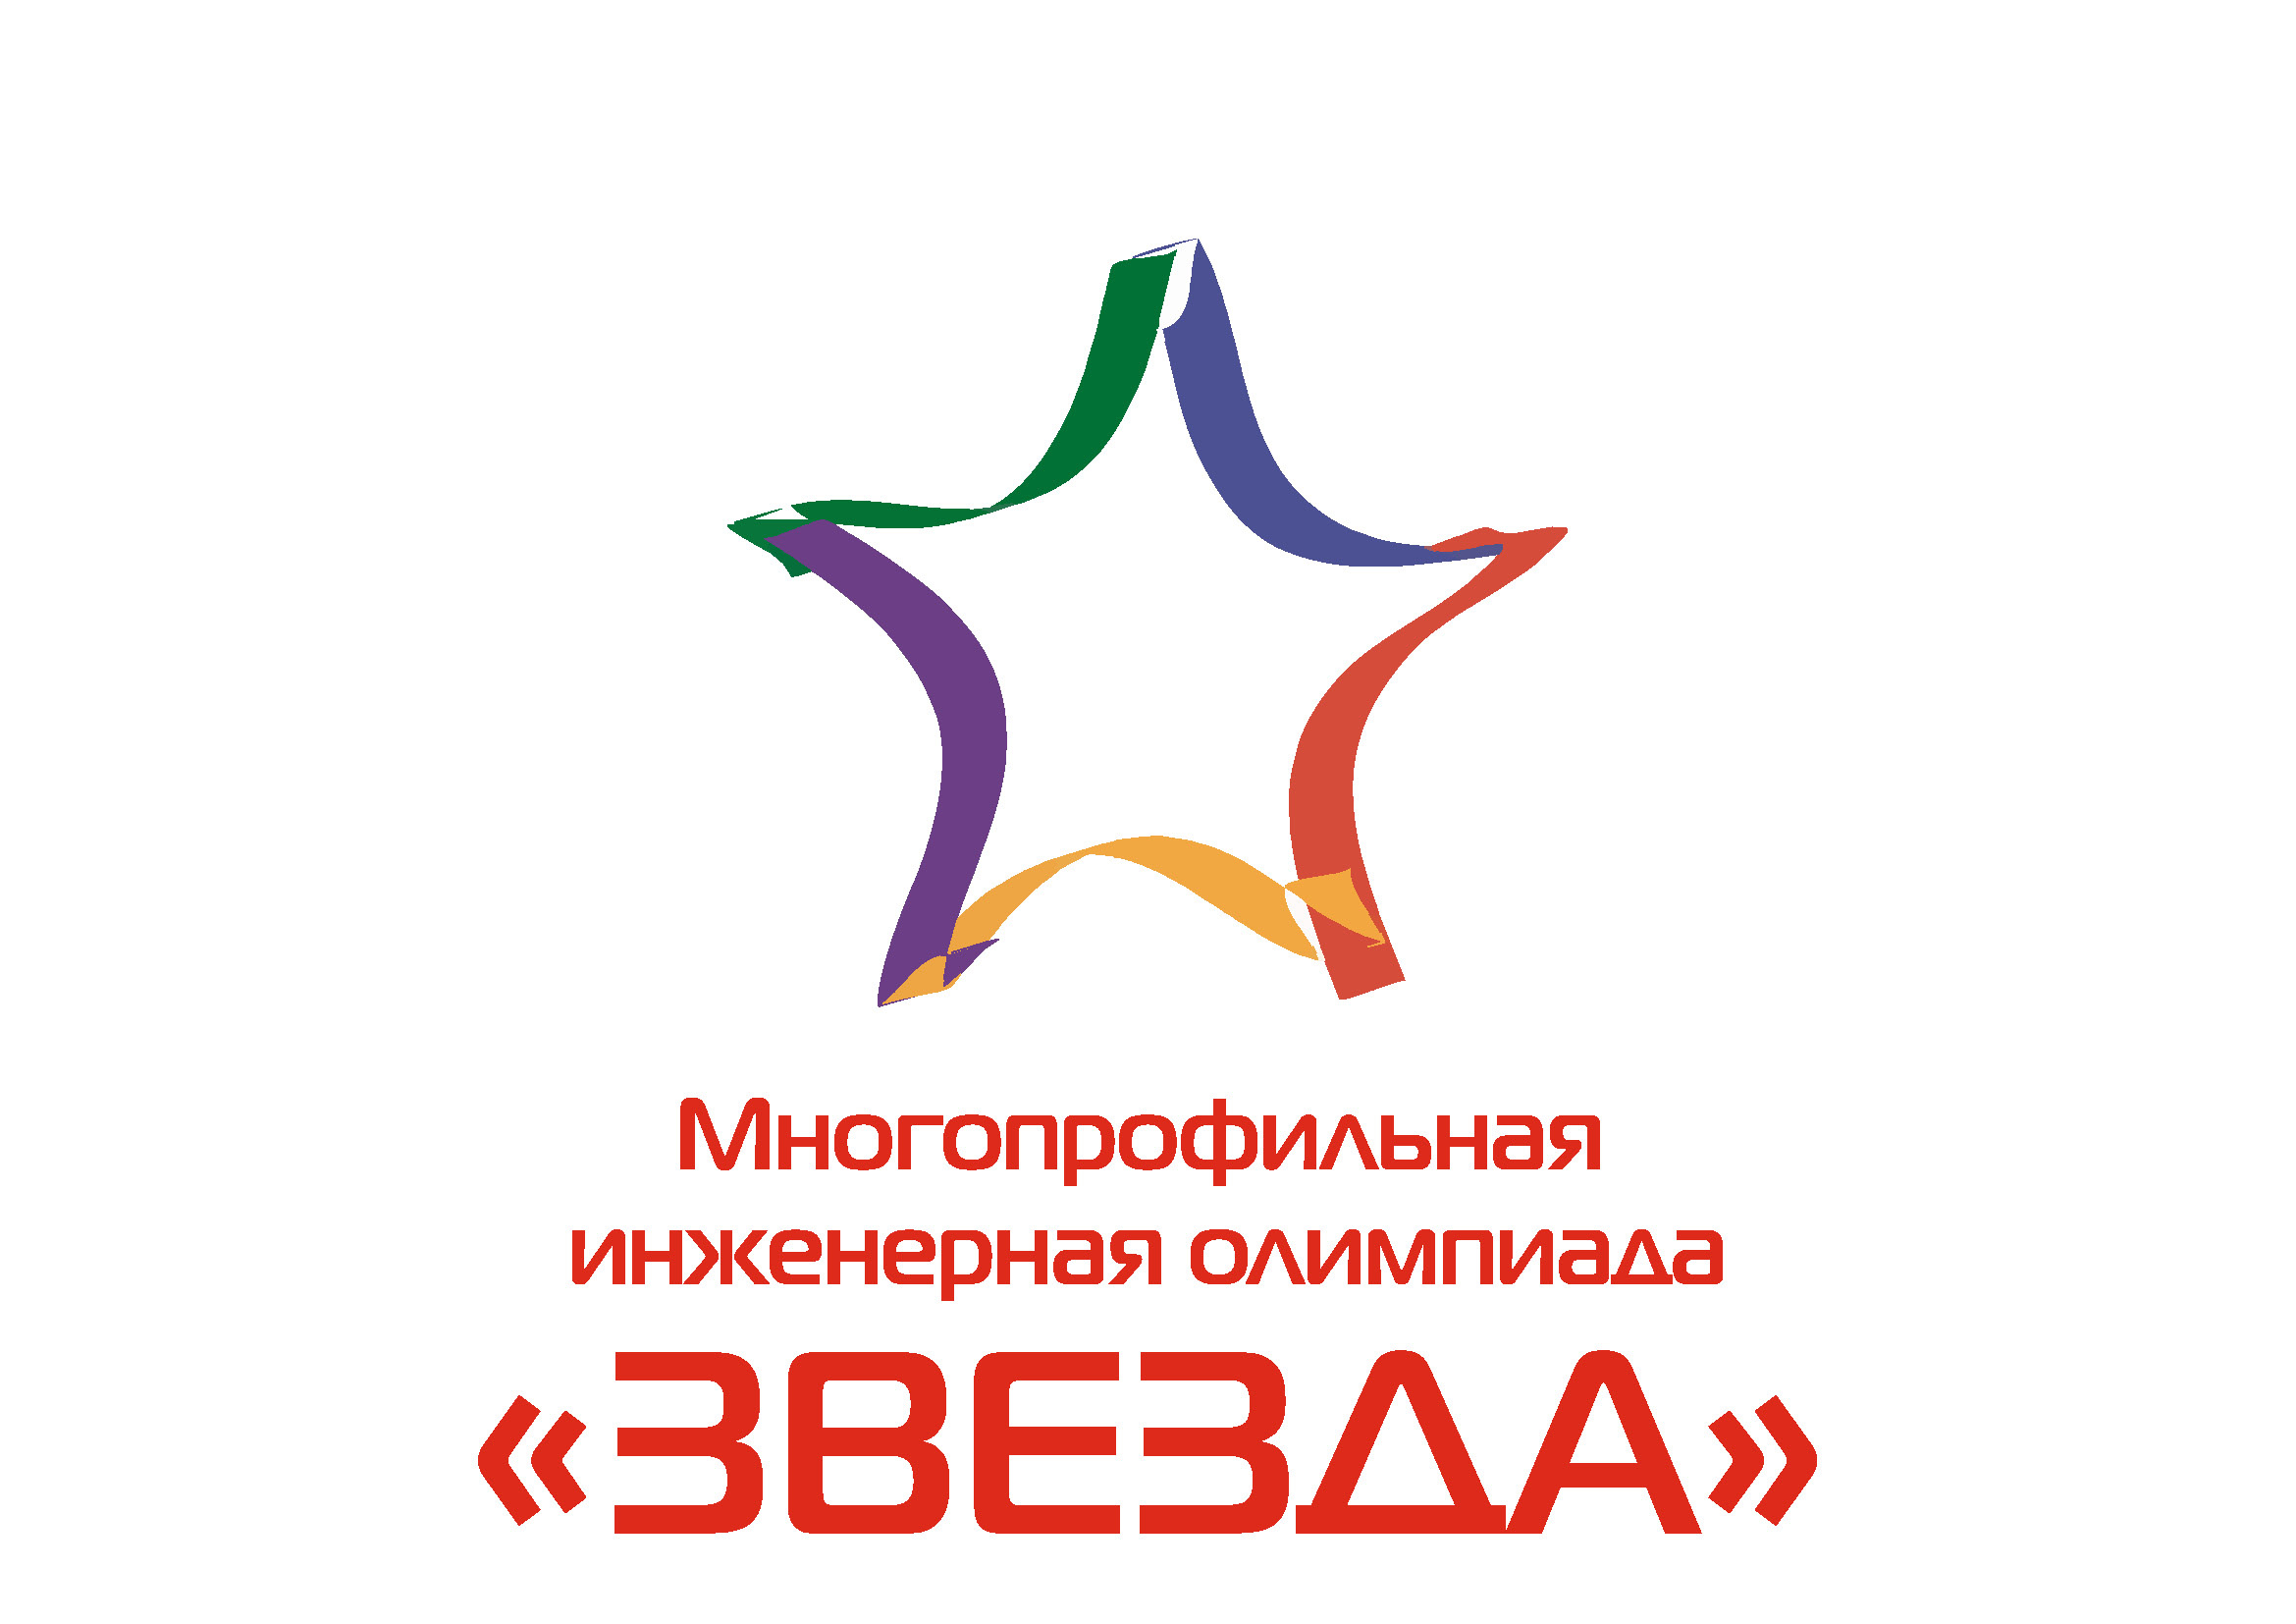 «Звезда» — это крупнейшая олимпиада, проводимая под эгидой Министерства науки и высшего образования, Союза машиностроителей России